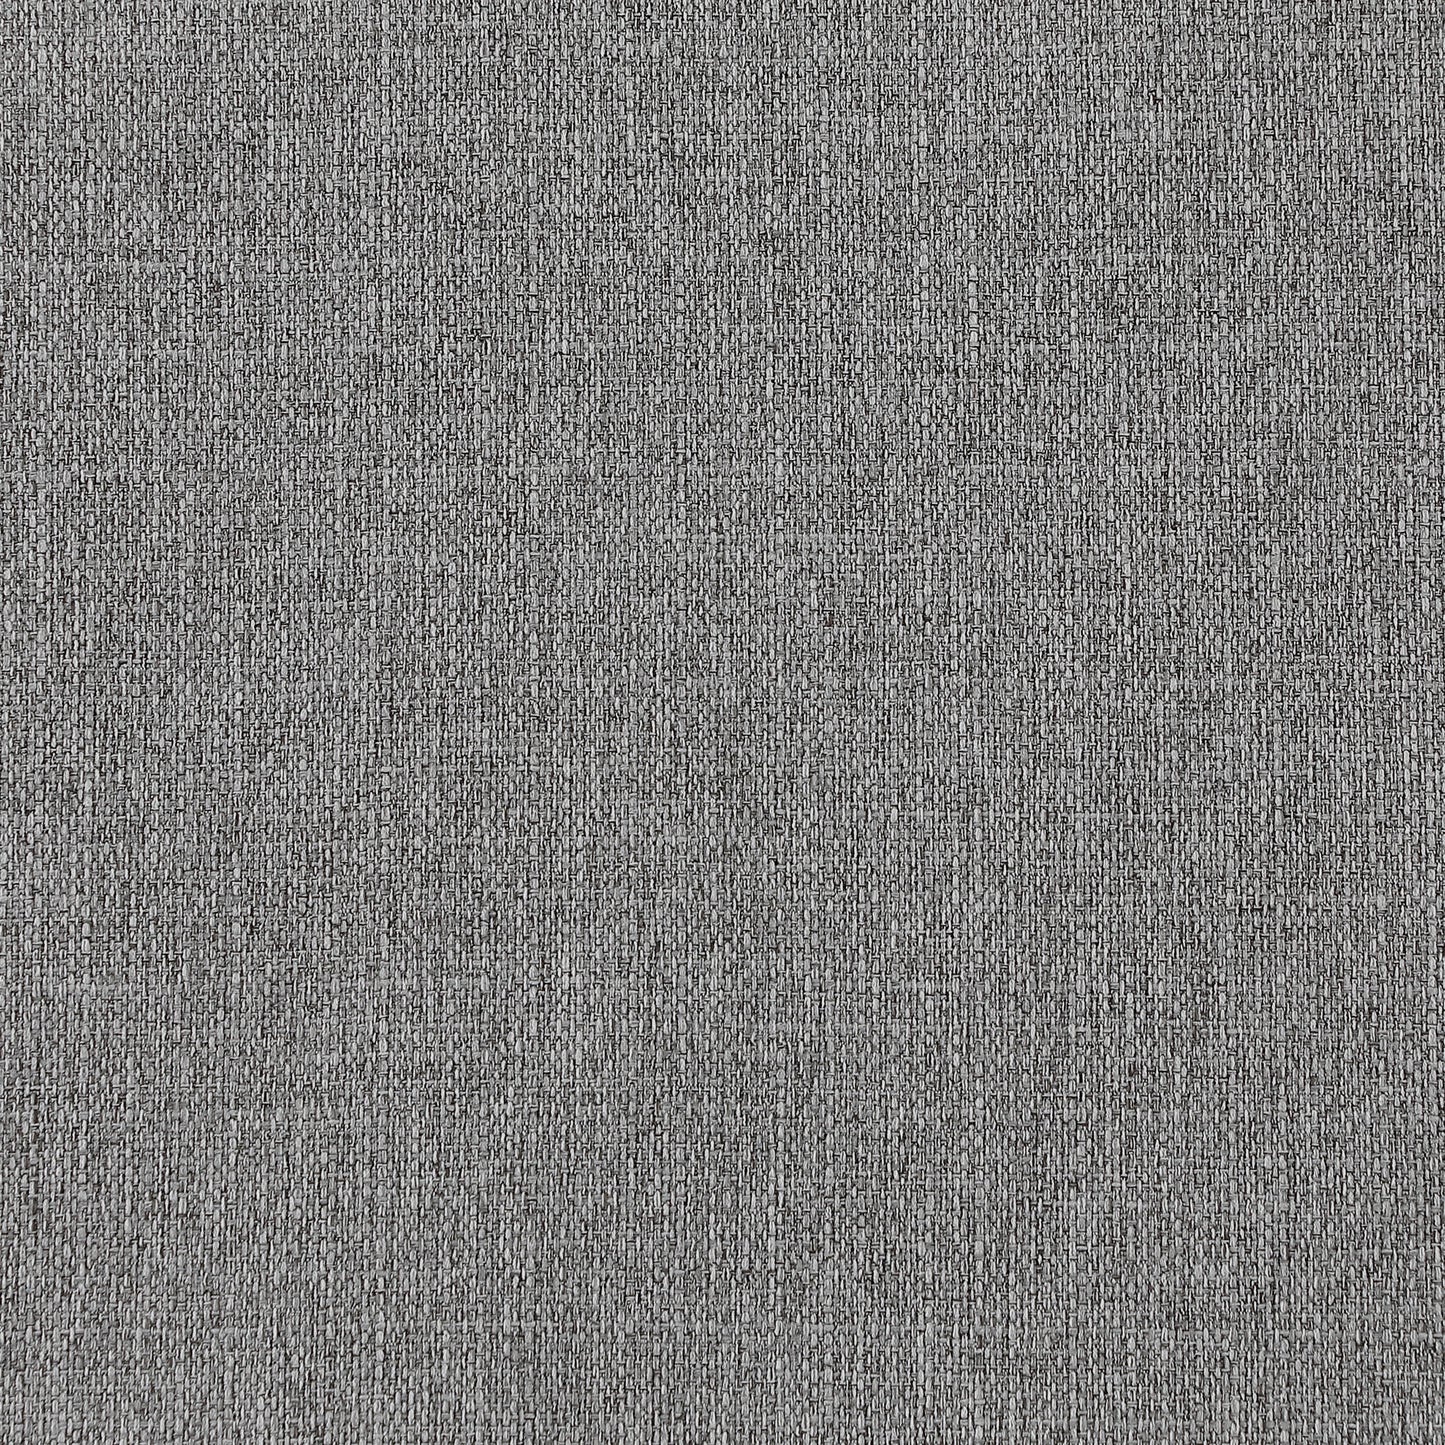 winston grey durable linen textured modular sofa s120a